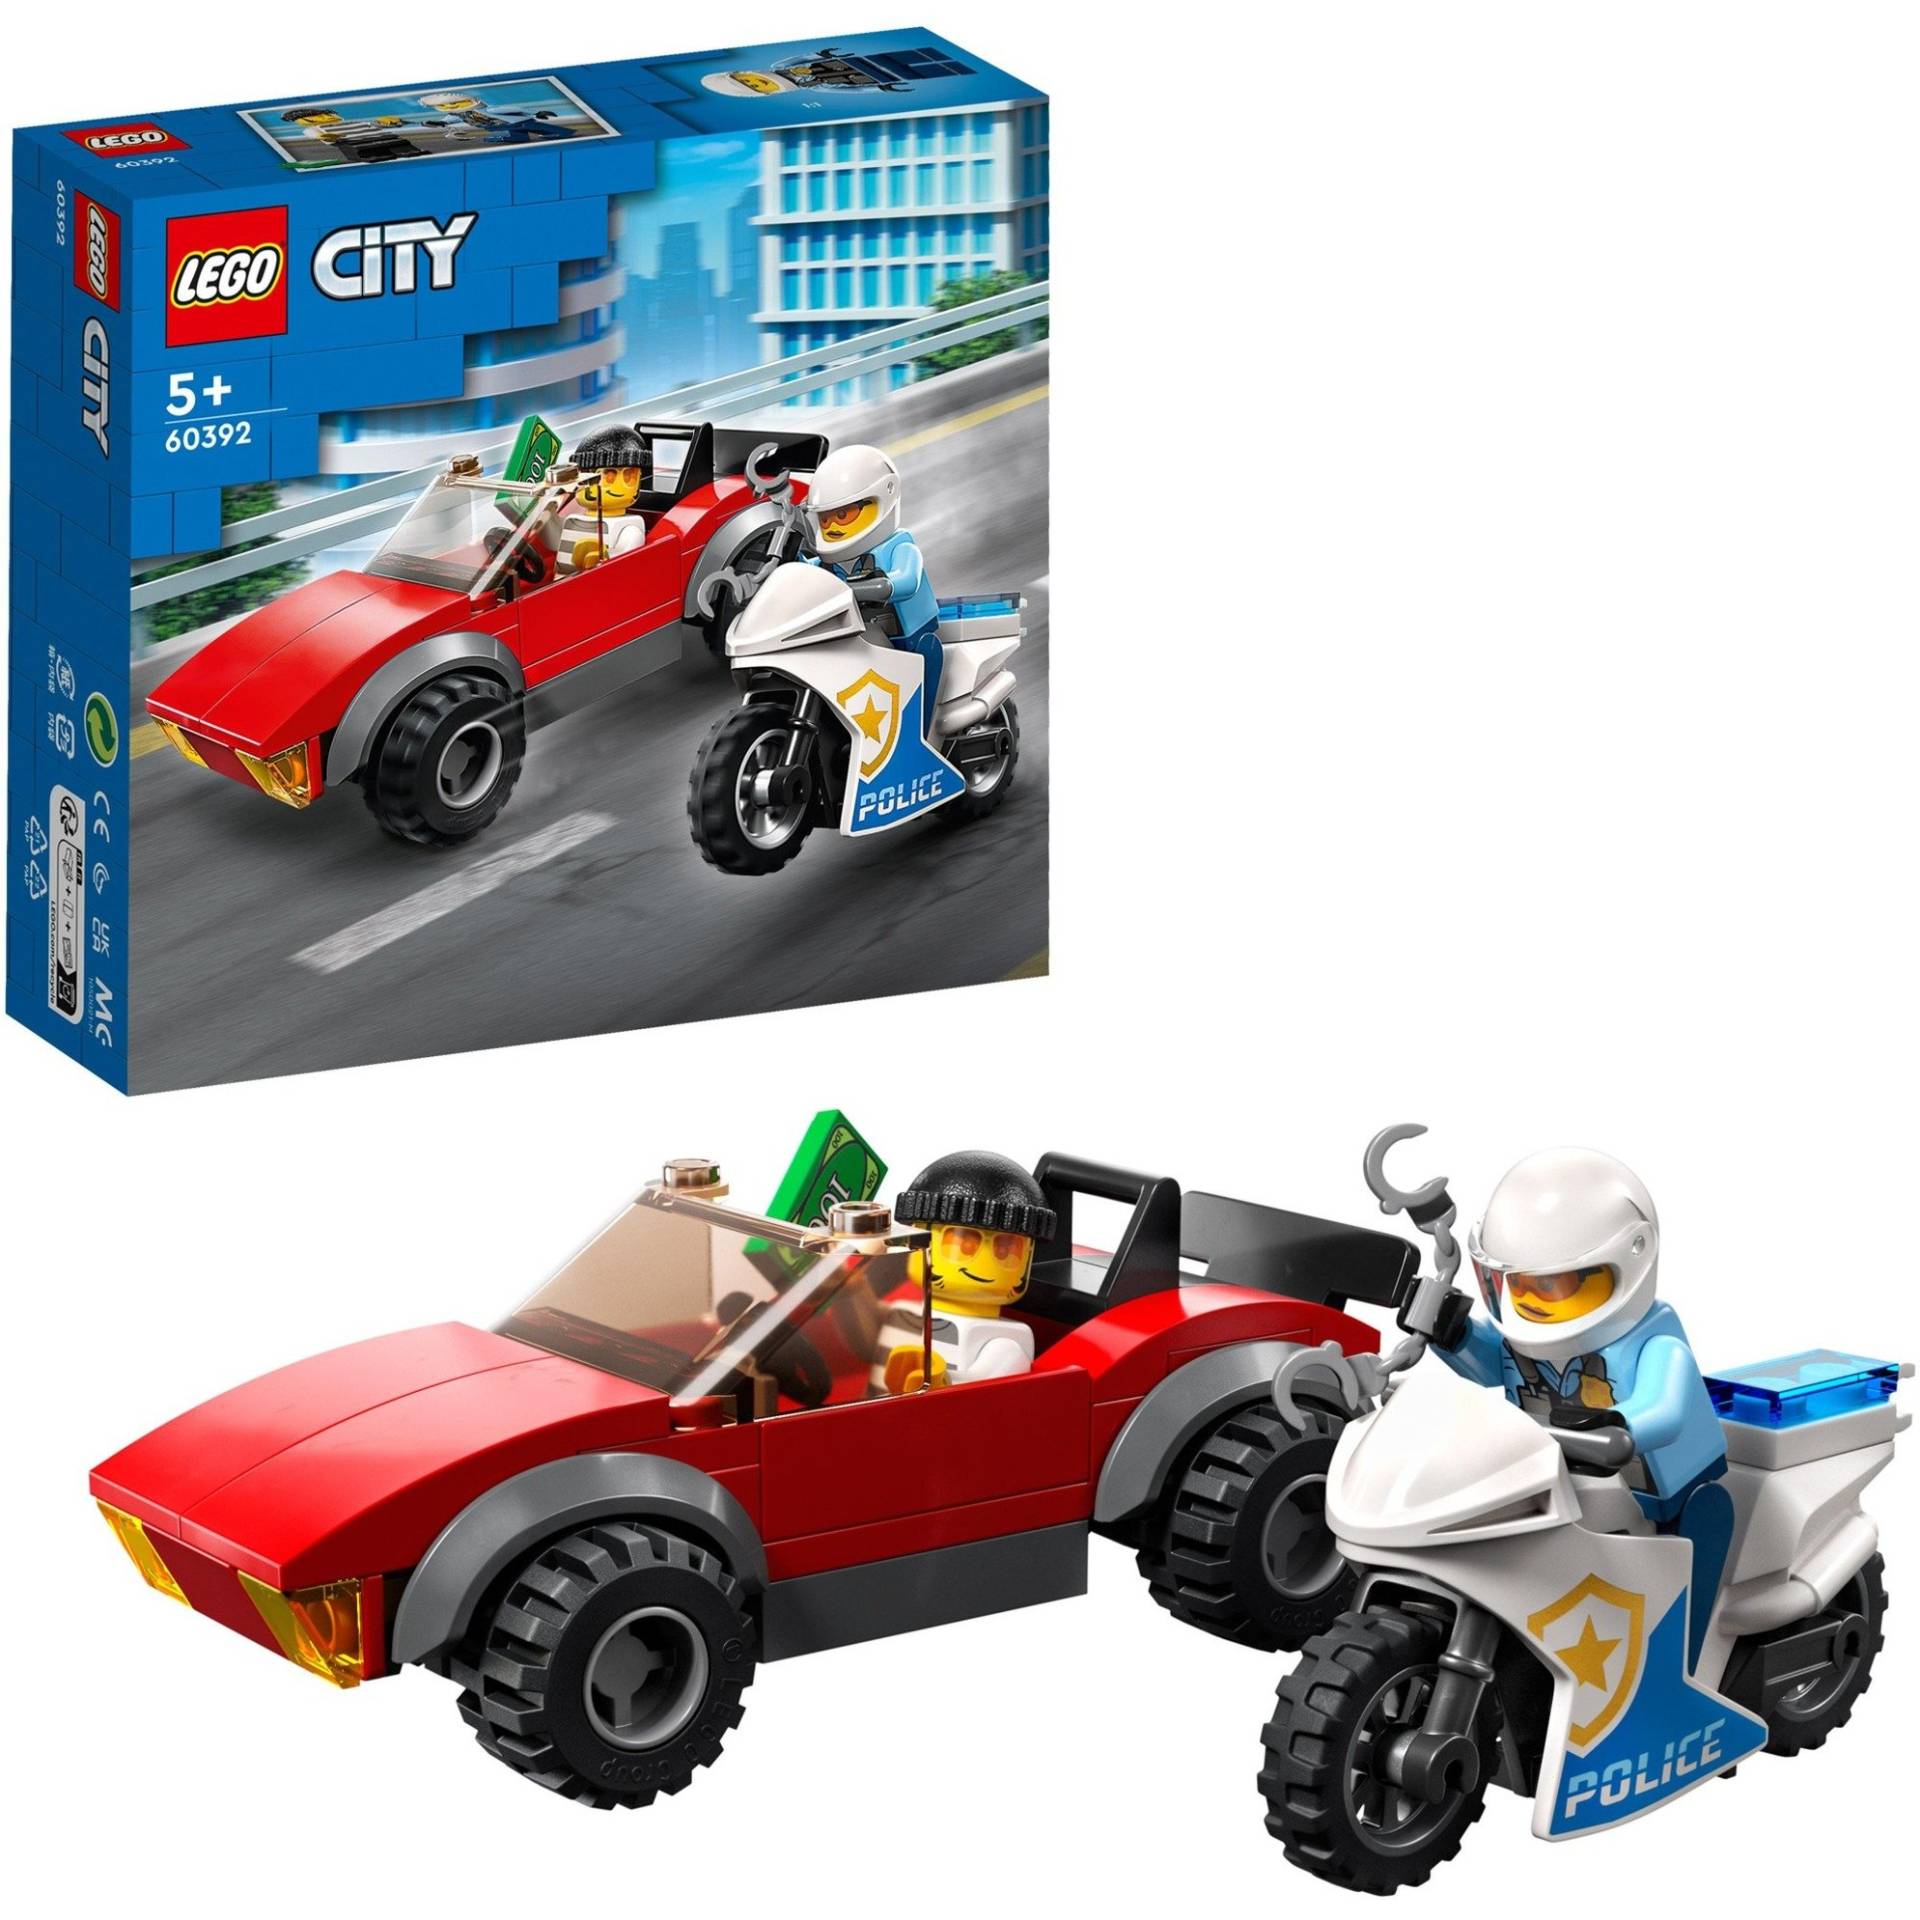 60392 City Verfolgungsjagd mit dem Polizeimotorrad, Konstruktionsspielzeug von Lego